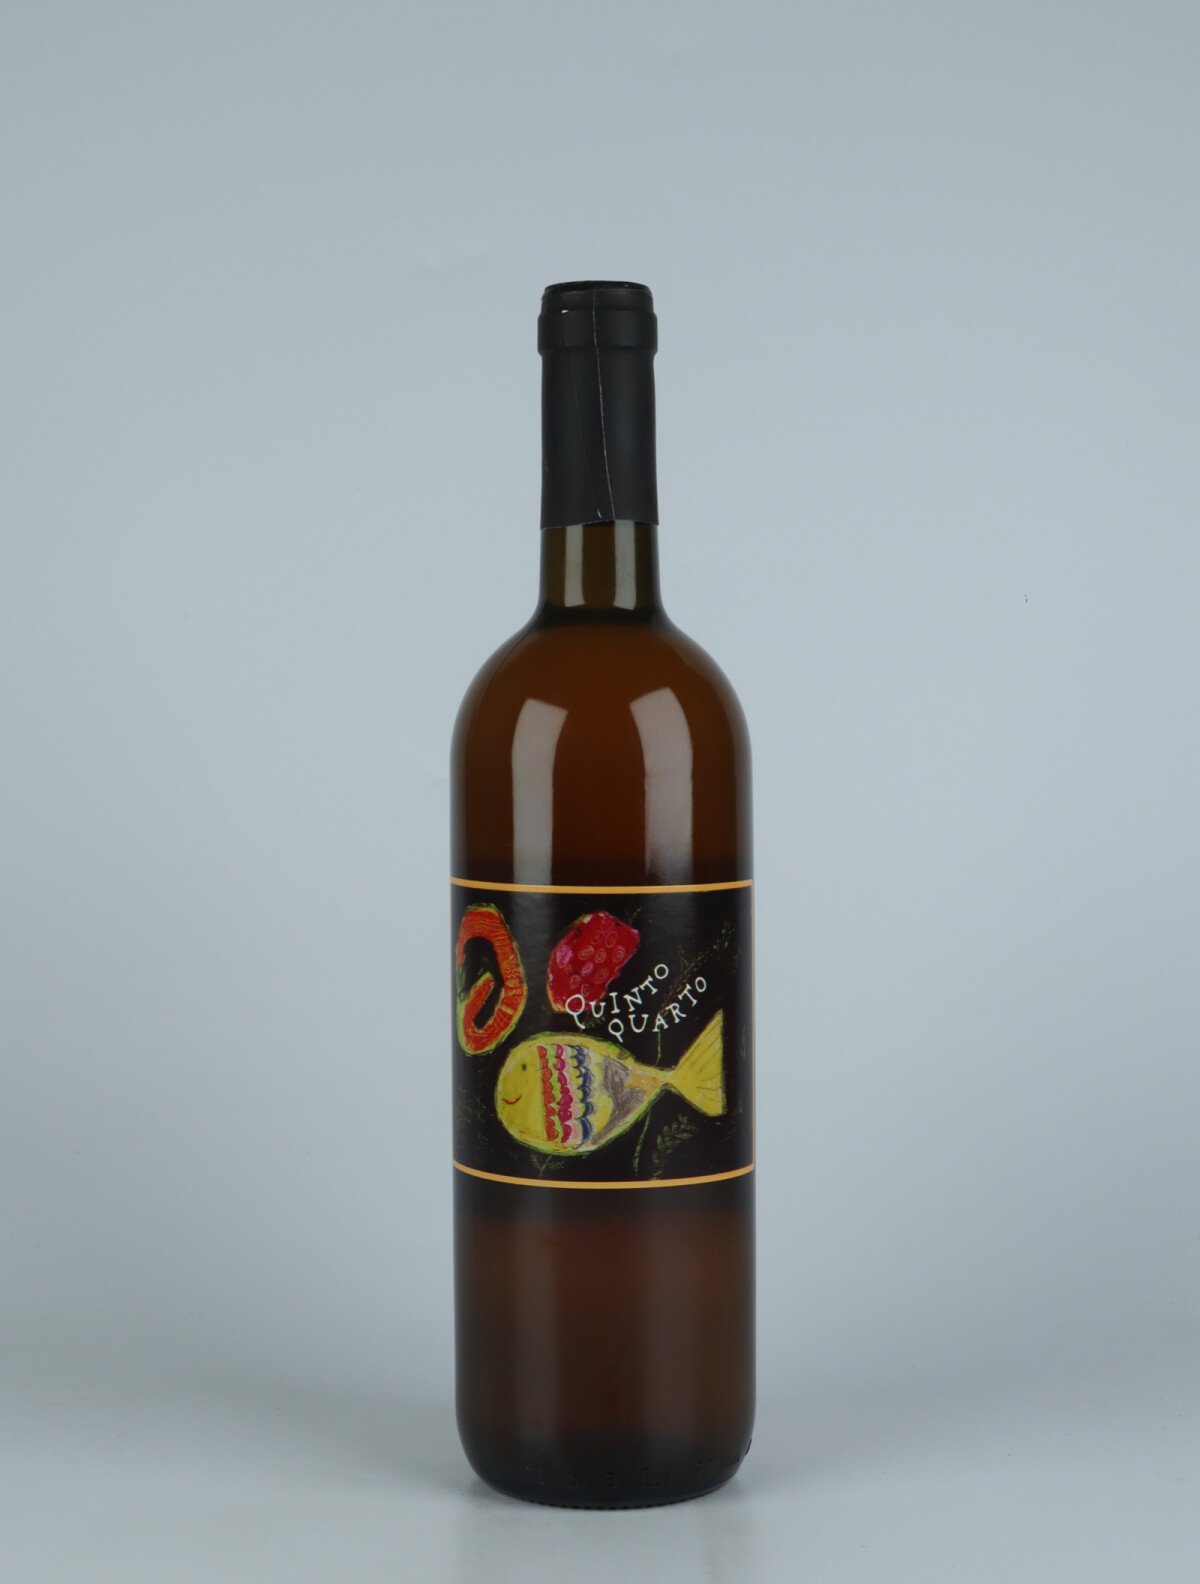 En flaske N.V. Quinto Quarto Vino Bianco Orange vin fra Franco Terpin, Friuli i Italien